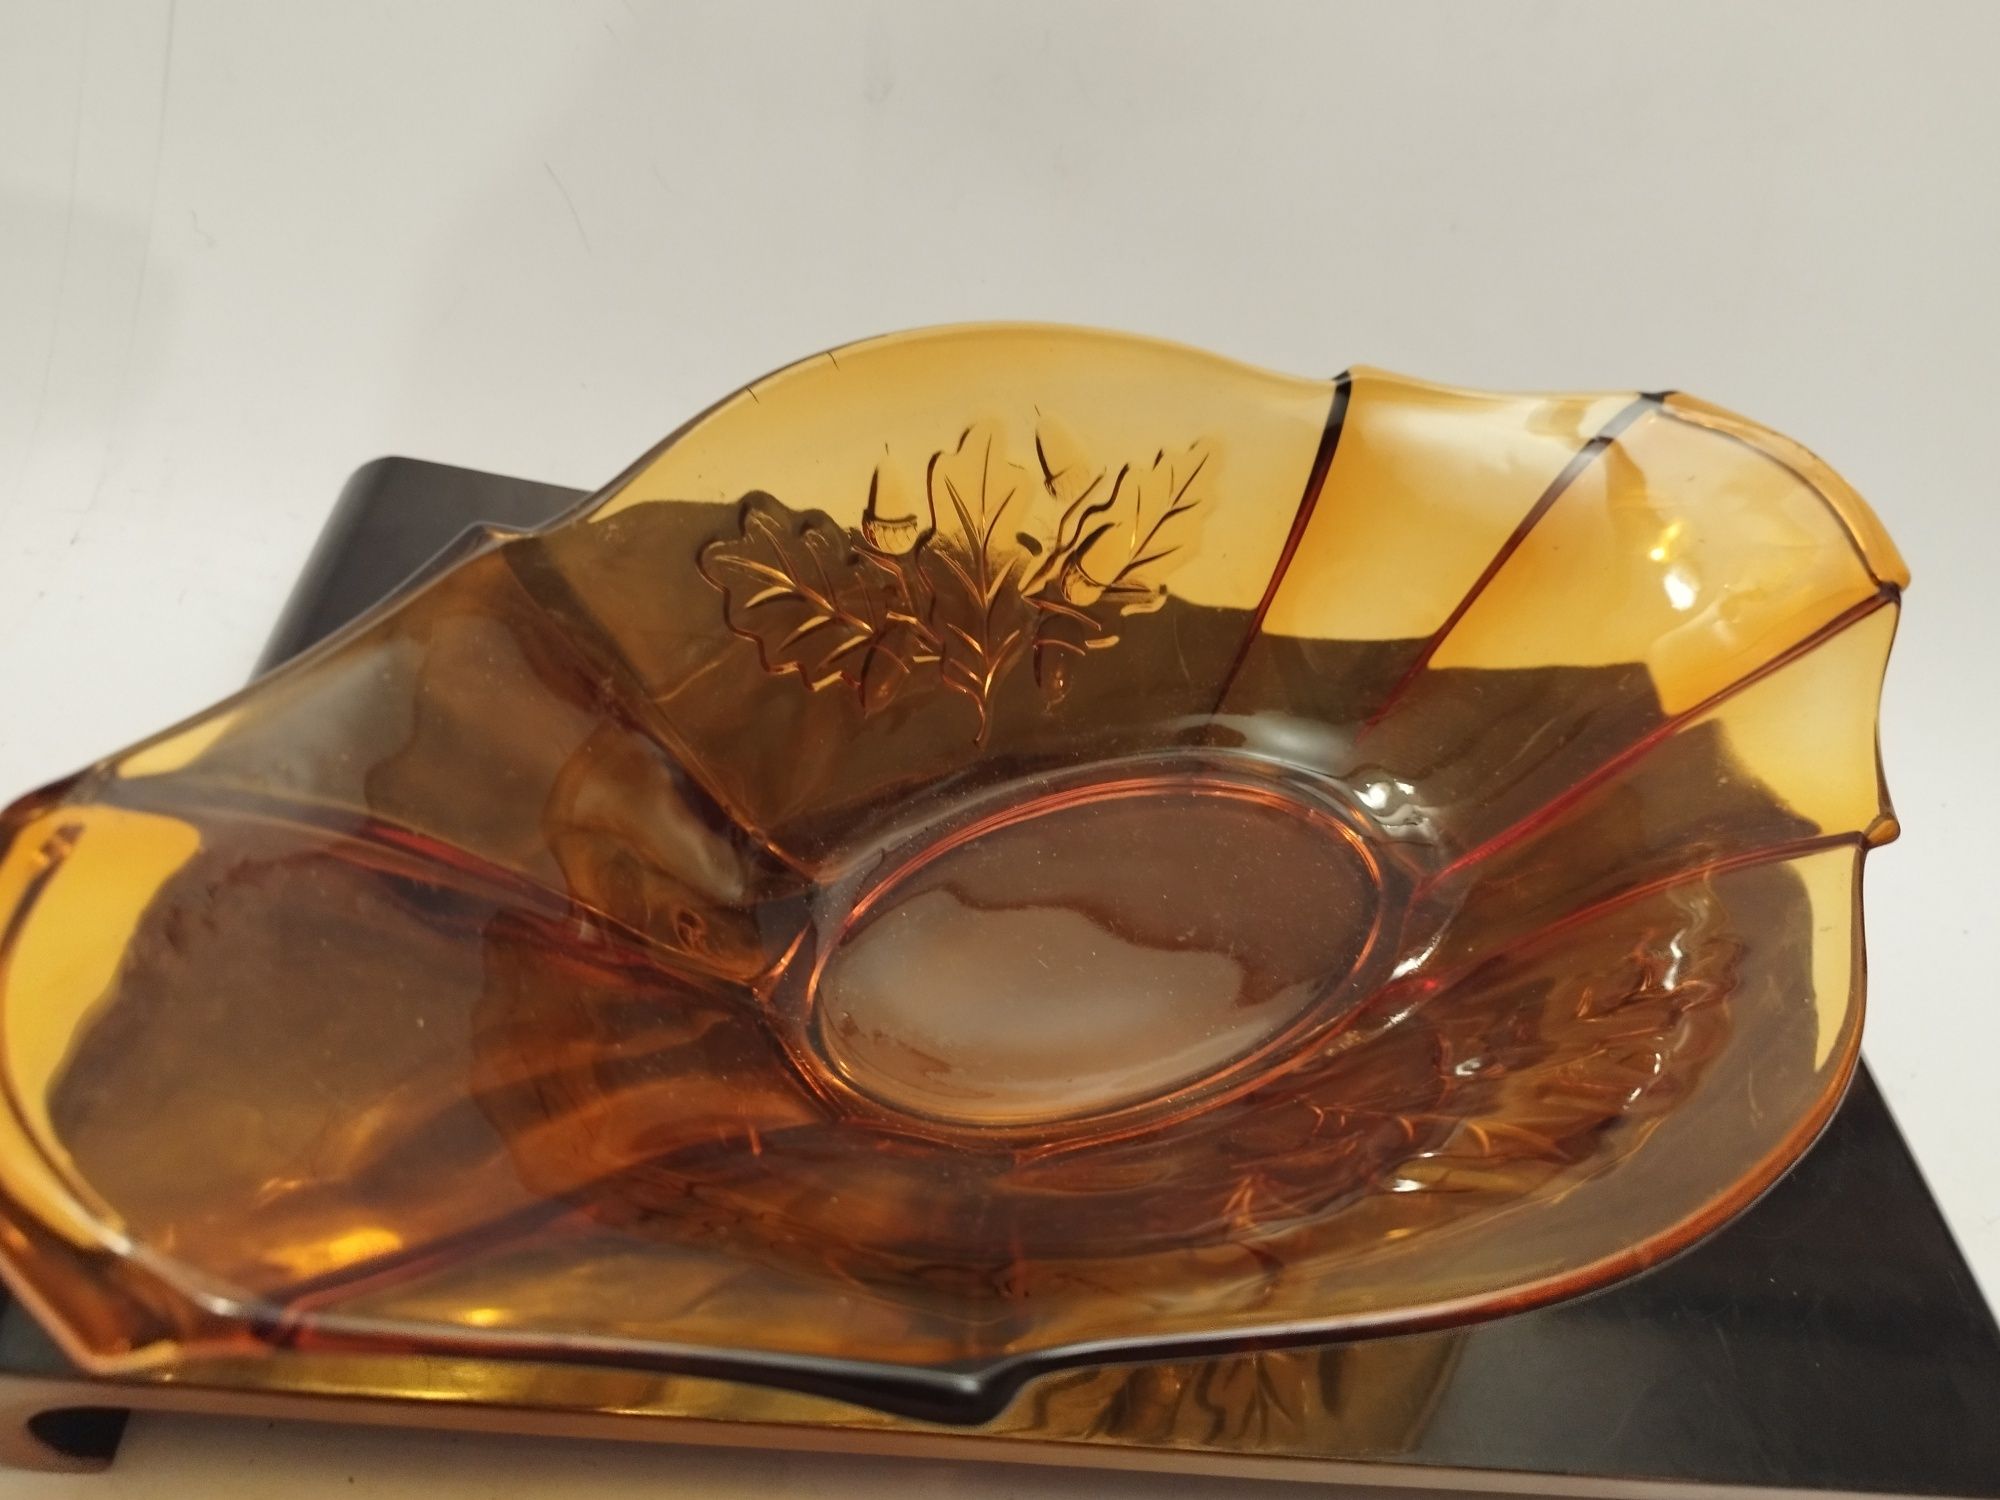 Bursztynowa żardiniera miodowa kolorowe szkło prl vintage retro prl